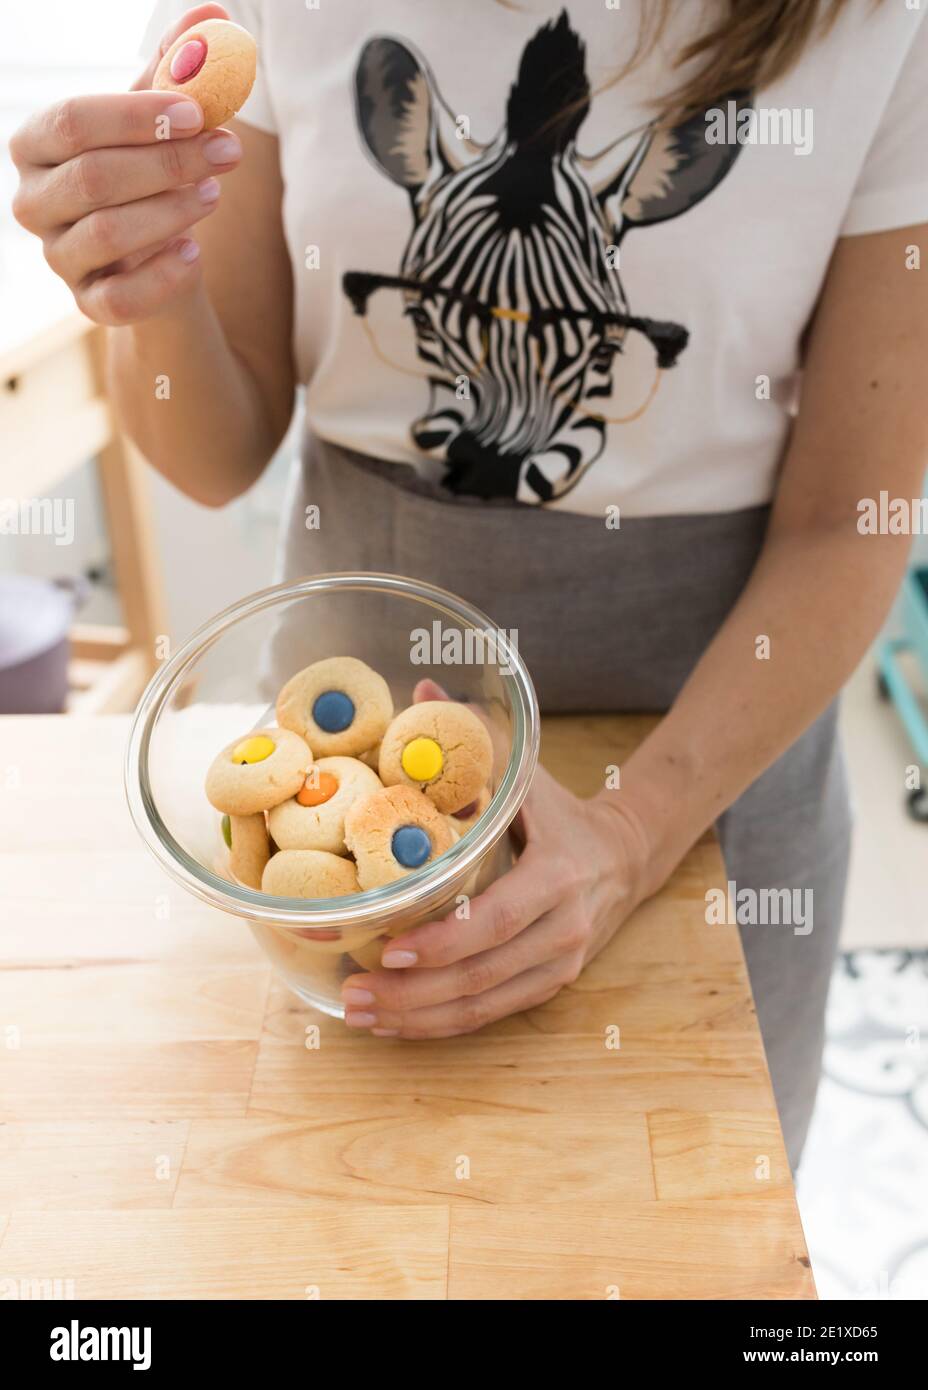 Donna vestita con una t-shirt zebra che raccoglie un biscotto rosso con la mano destra e mostra un vaso aperto pieno di biscotti colorati. Foto Stock